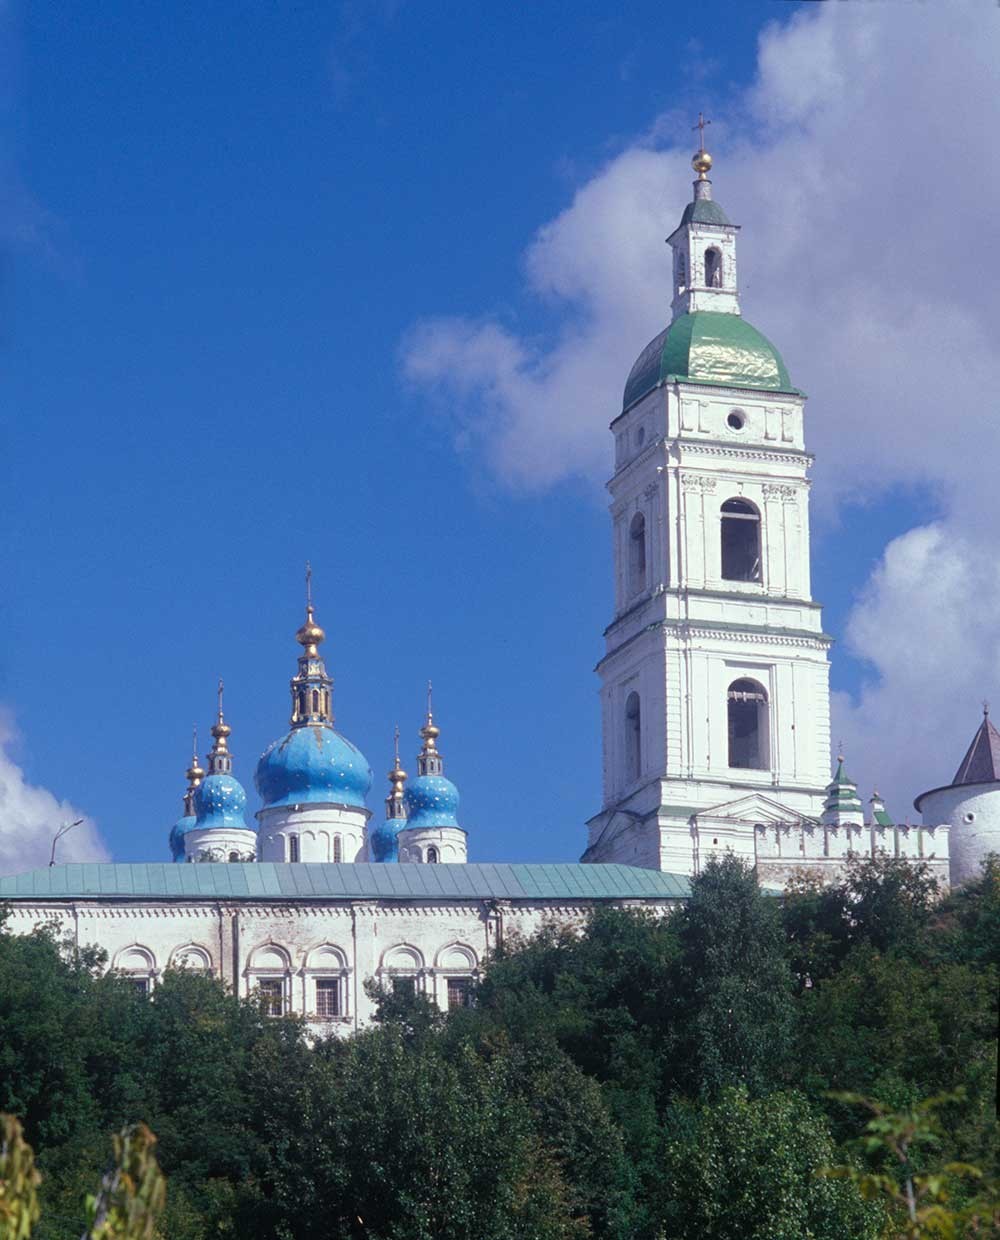 Kremlin de Tobolsk. Trésorerie (« Chambres suédoises »), coupoles de la cathédrale Sainte-Sophie, clocher